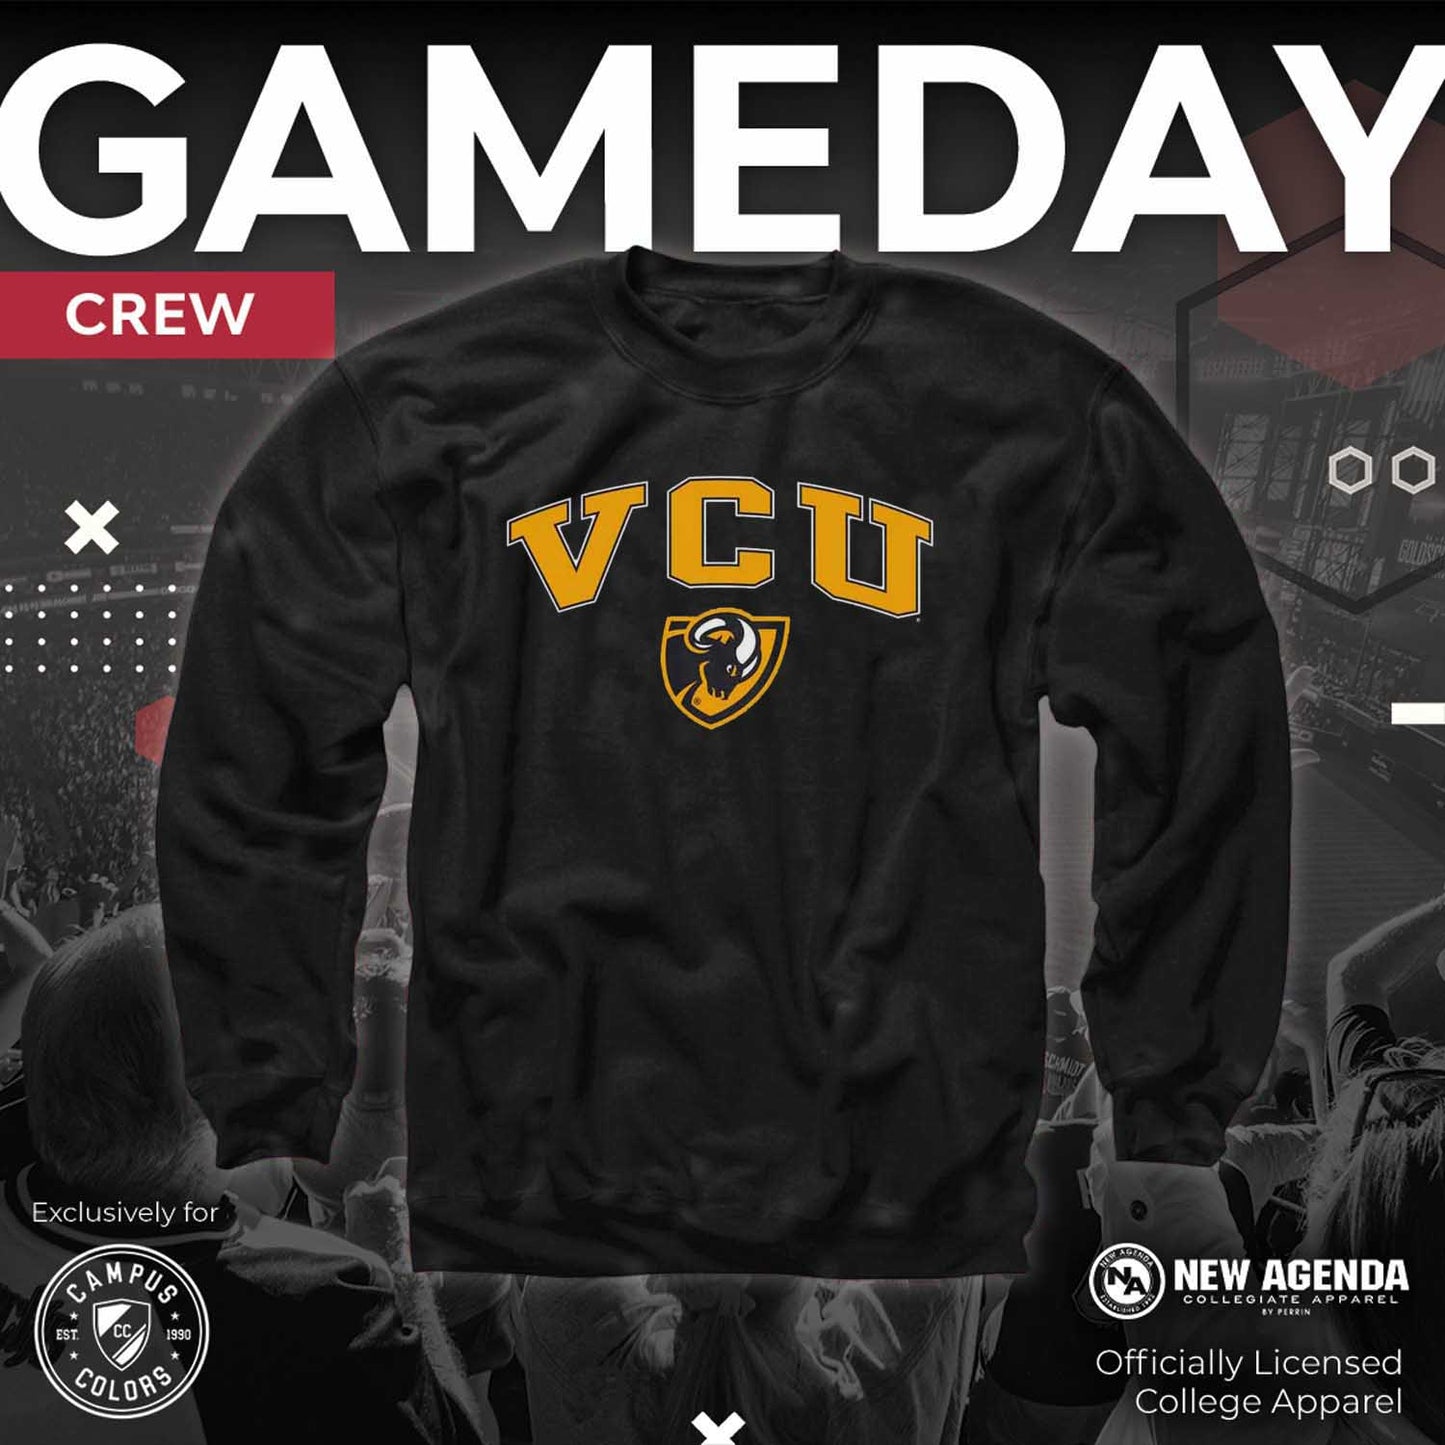 VCU Rams Adult Arch & Logo Soft Style Gameday Crewneck Sweatshirt - Black